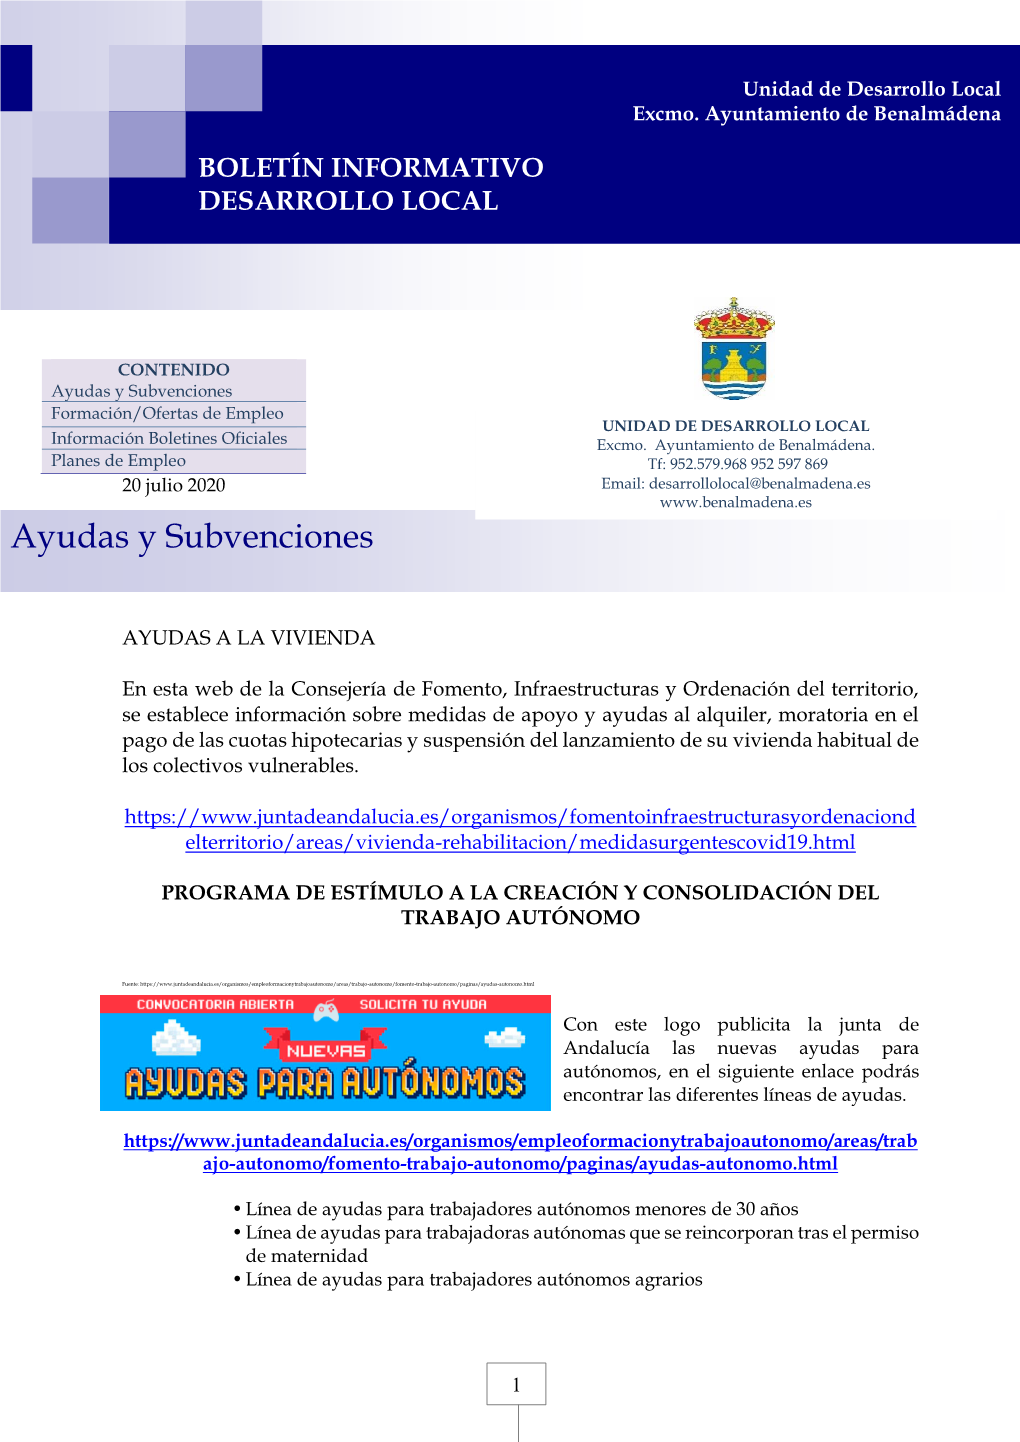 Ayudas Y Subvenciones Formación/Ofertas De Empleo UNIDAD DE DESARROLLO LOCAL Información Boletines Oficiales Excmo